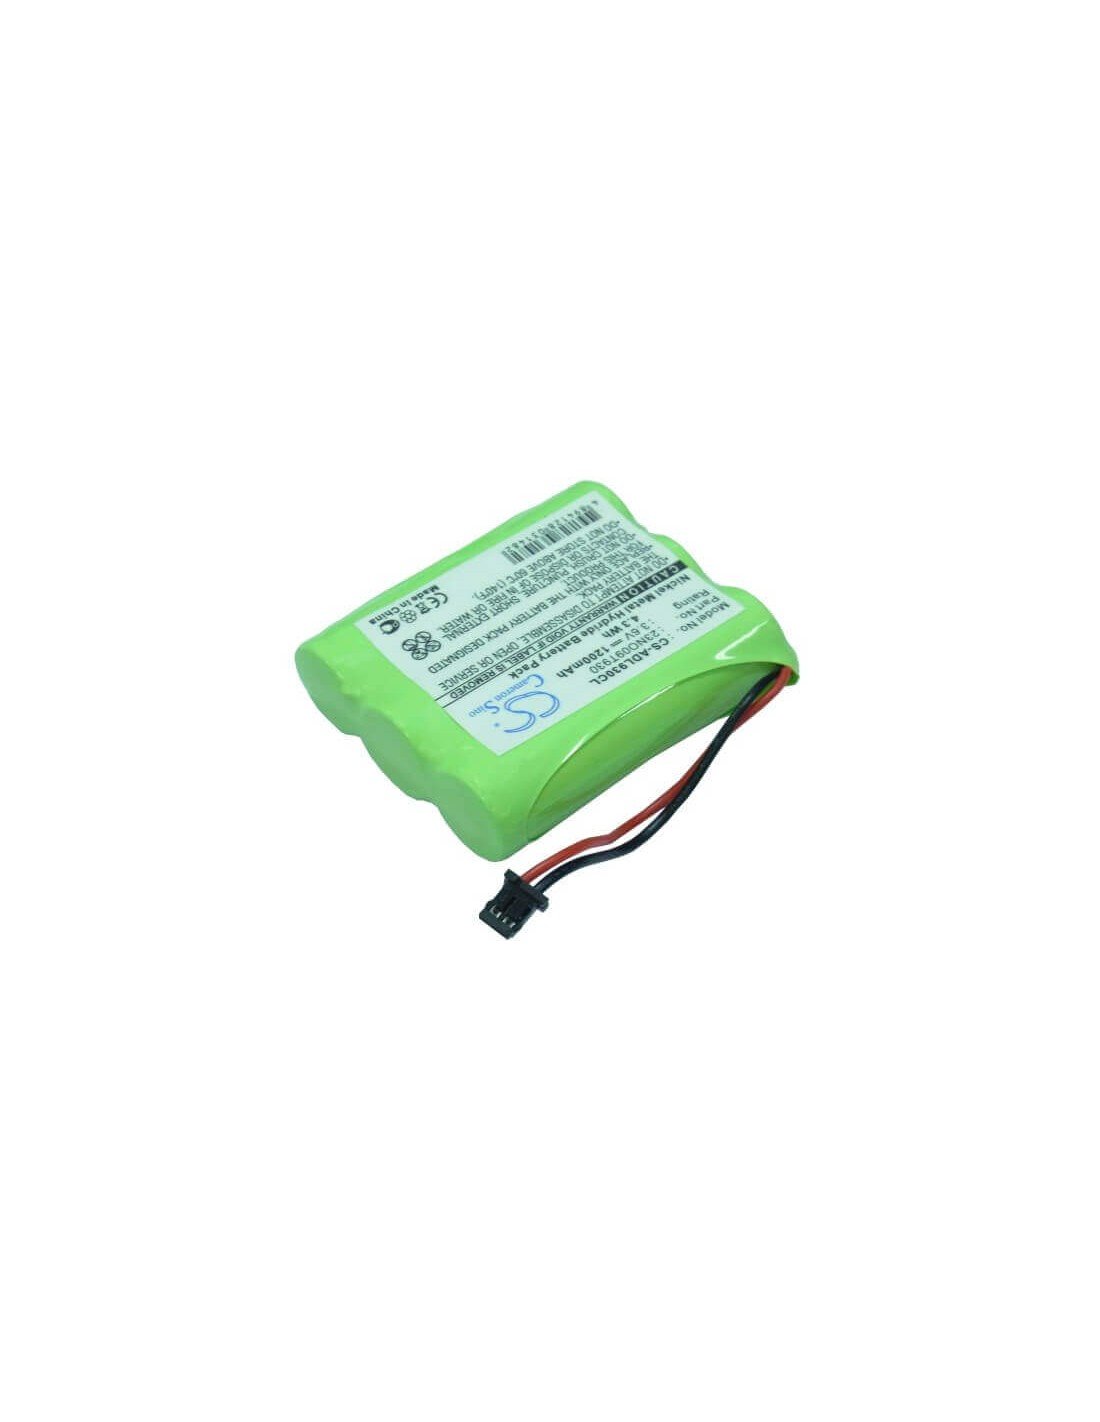 Battery for Daewoo, Supertel 2000 3.6V, 1200mAh - 4.32Wh